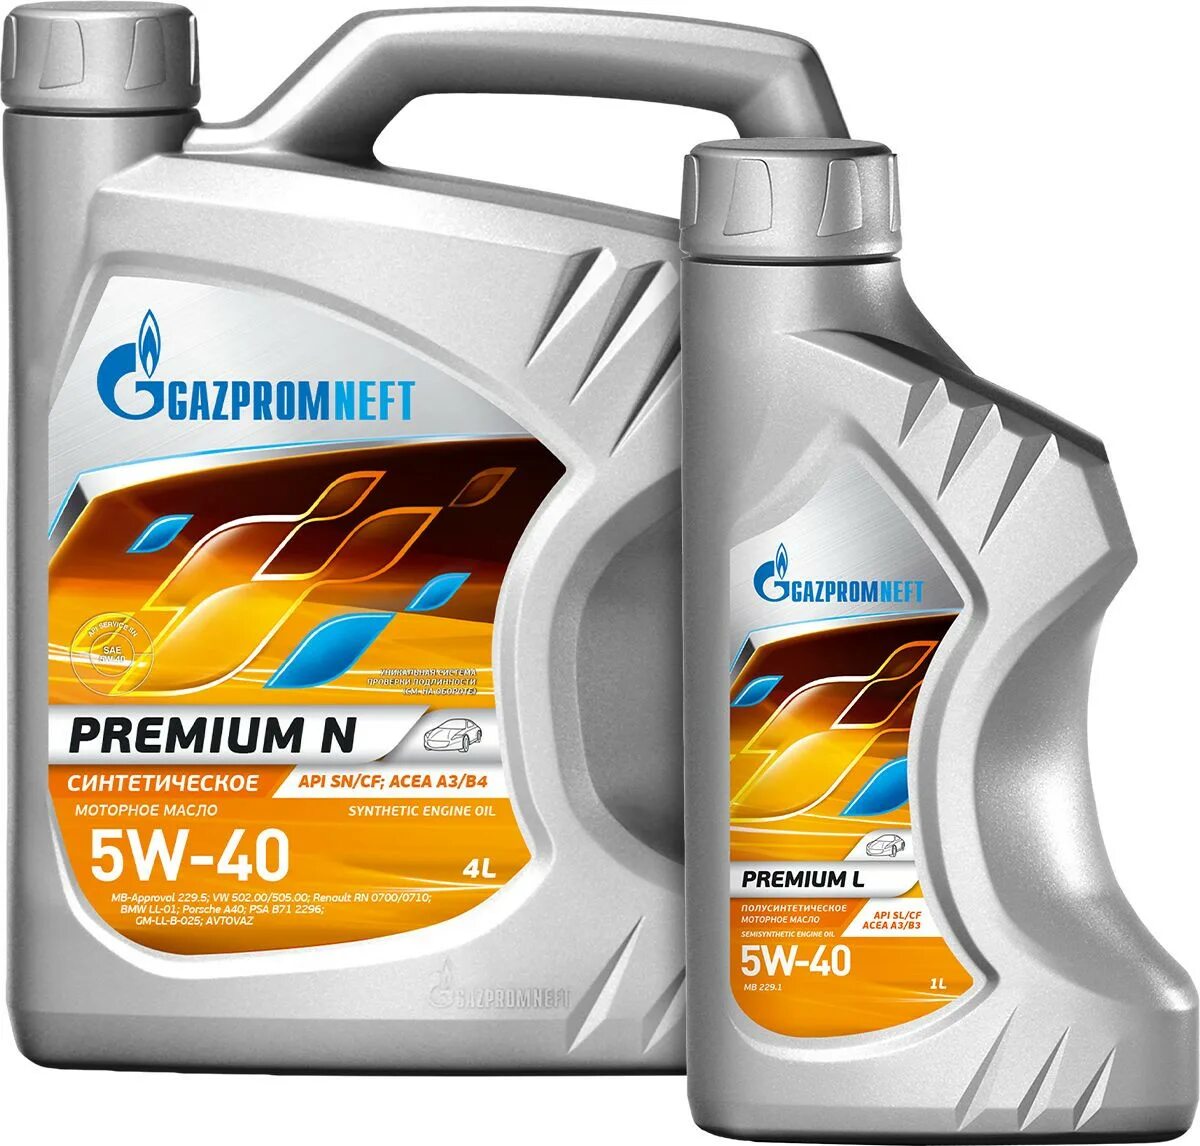 Газпромнефть премиум 5w40 купить. Gazpromneft Premium n 5w-40. Масло Газпромнефть 5w40 премиум. Масло Газпромнефть премиум н 5w40. Масло Газпромнефть 5w40 Premium n.